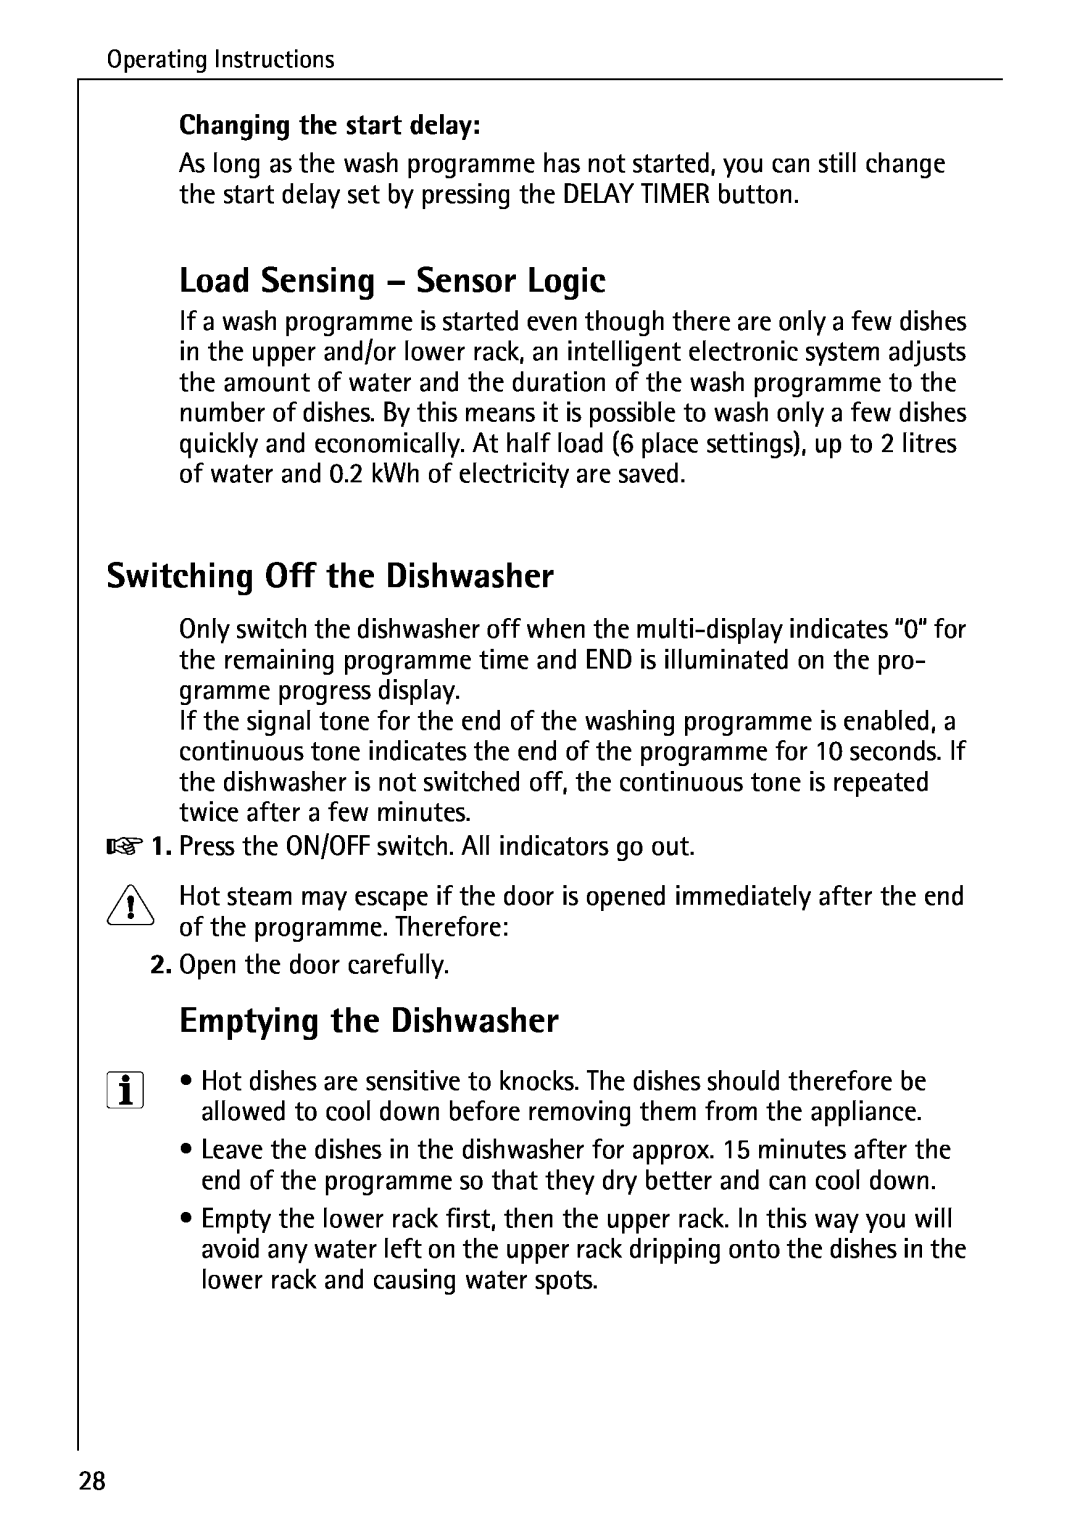 AEG 80850 I Load Sensing – Sensor Logic, Switching Off the Dishwasher, Emptying the Dishwasher, Changing the start delay 